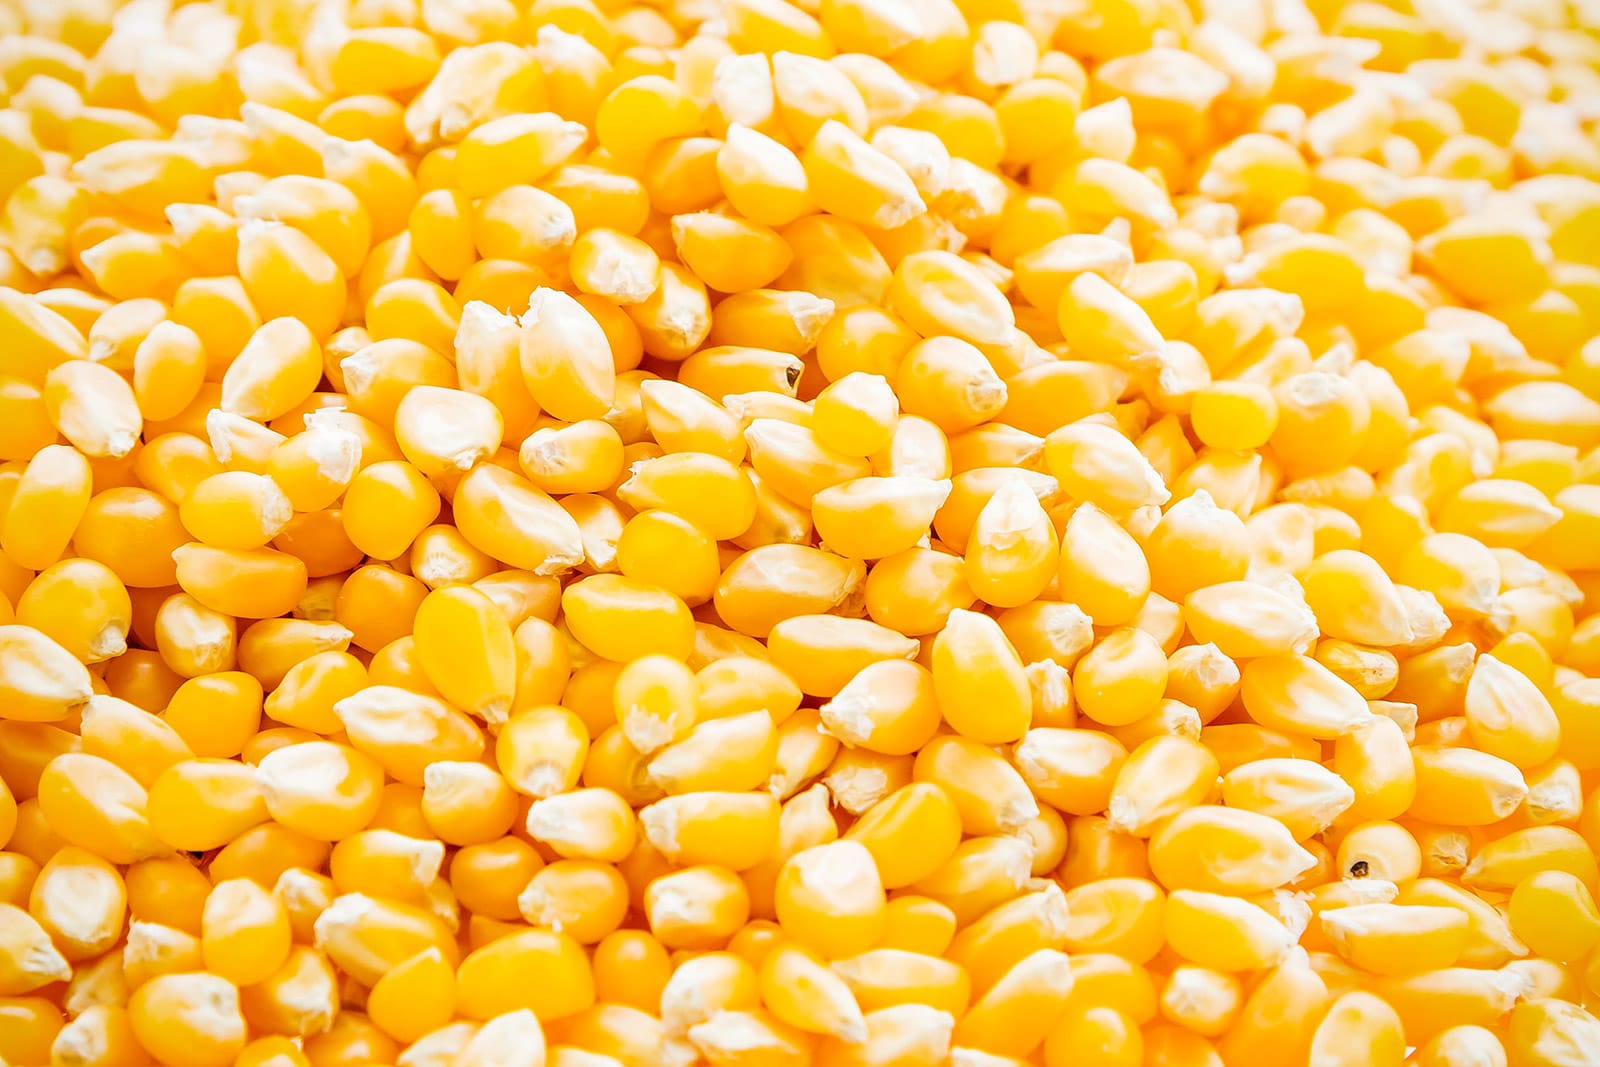 تقلص إمدادات الذرة الهندية بسبب الطلب المحلي القوي